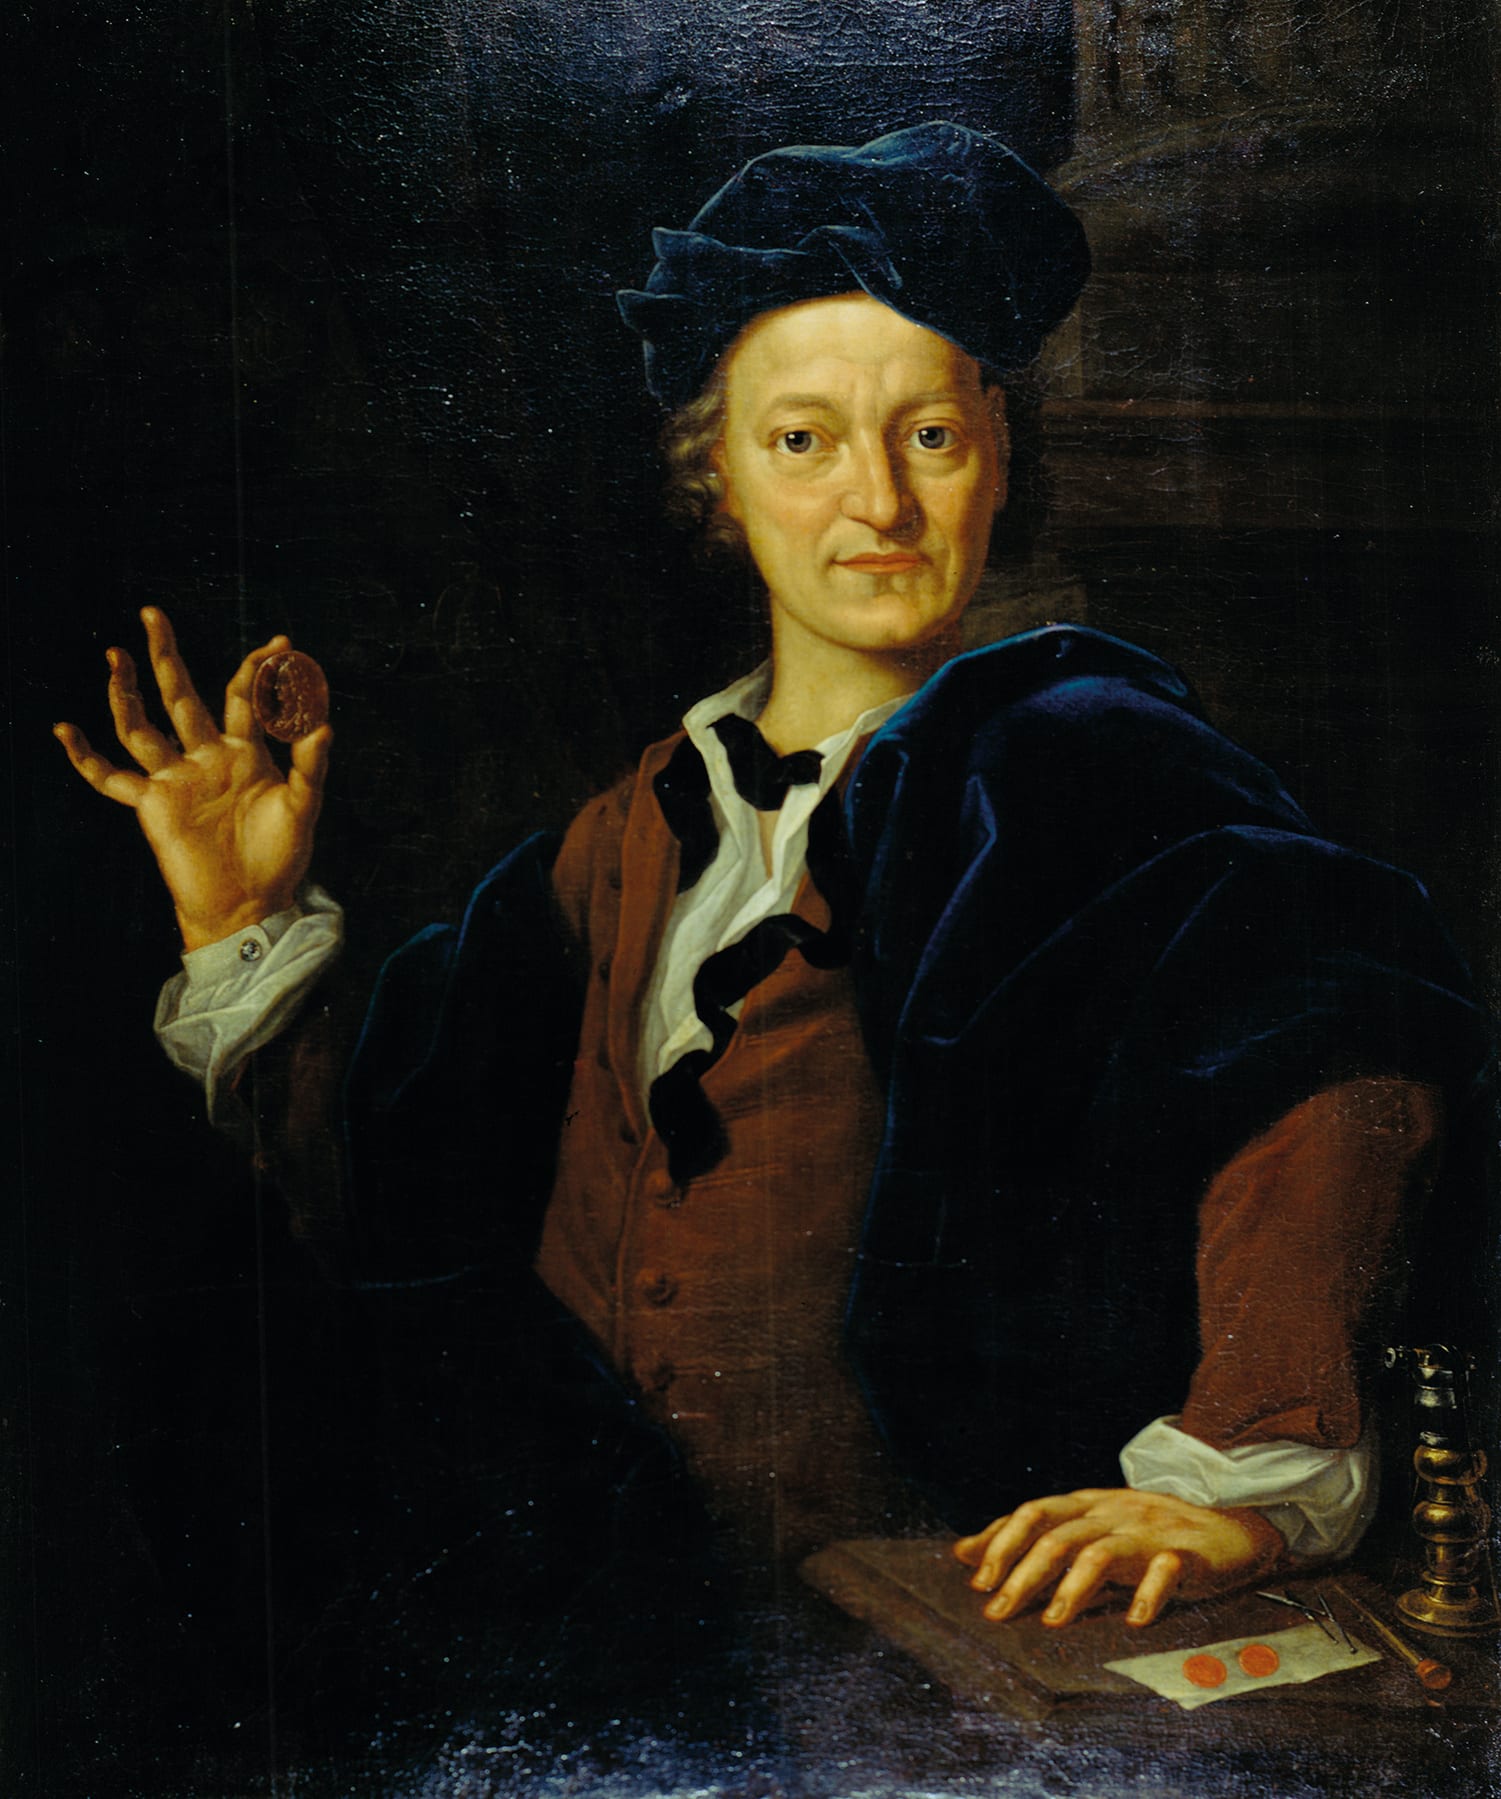 Kleemann, Nikolaus-Moritz: Johann Christoph Dorsch. - 1723